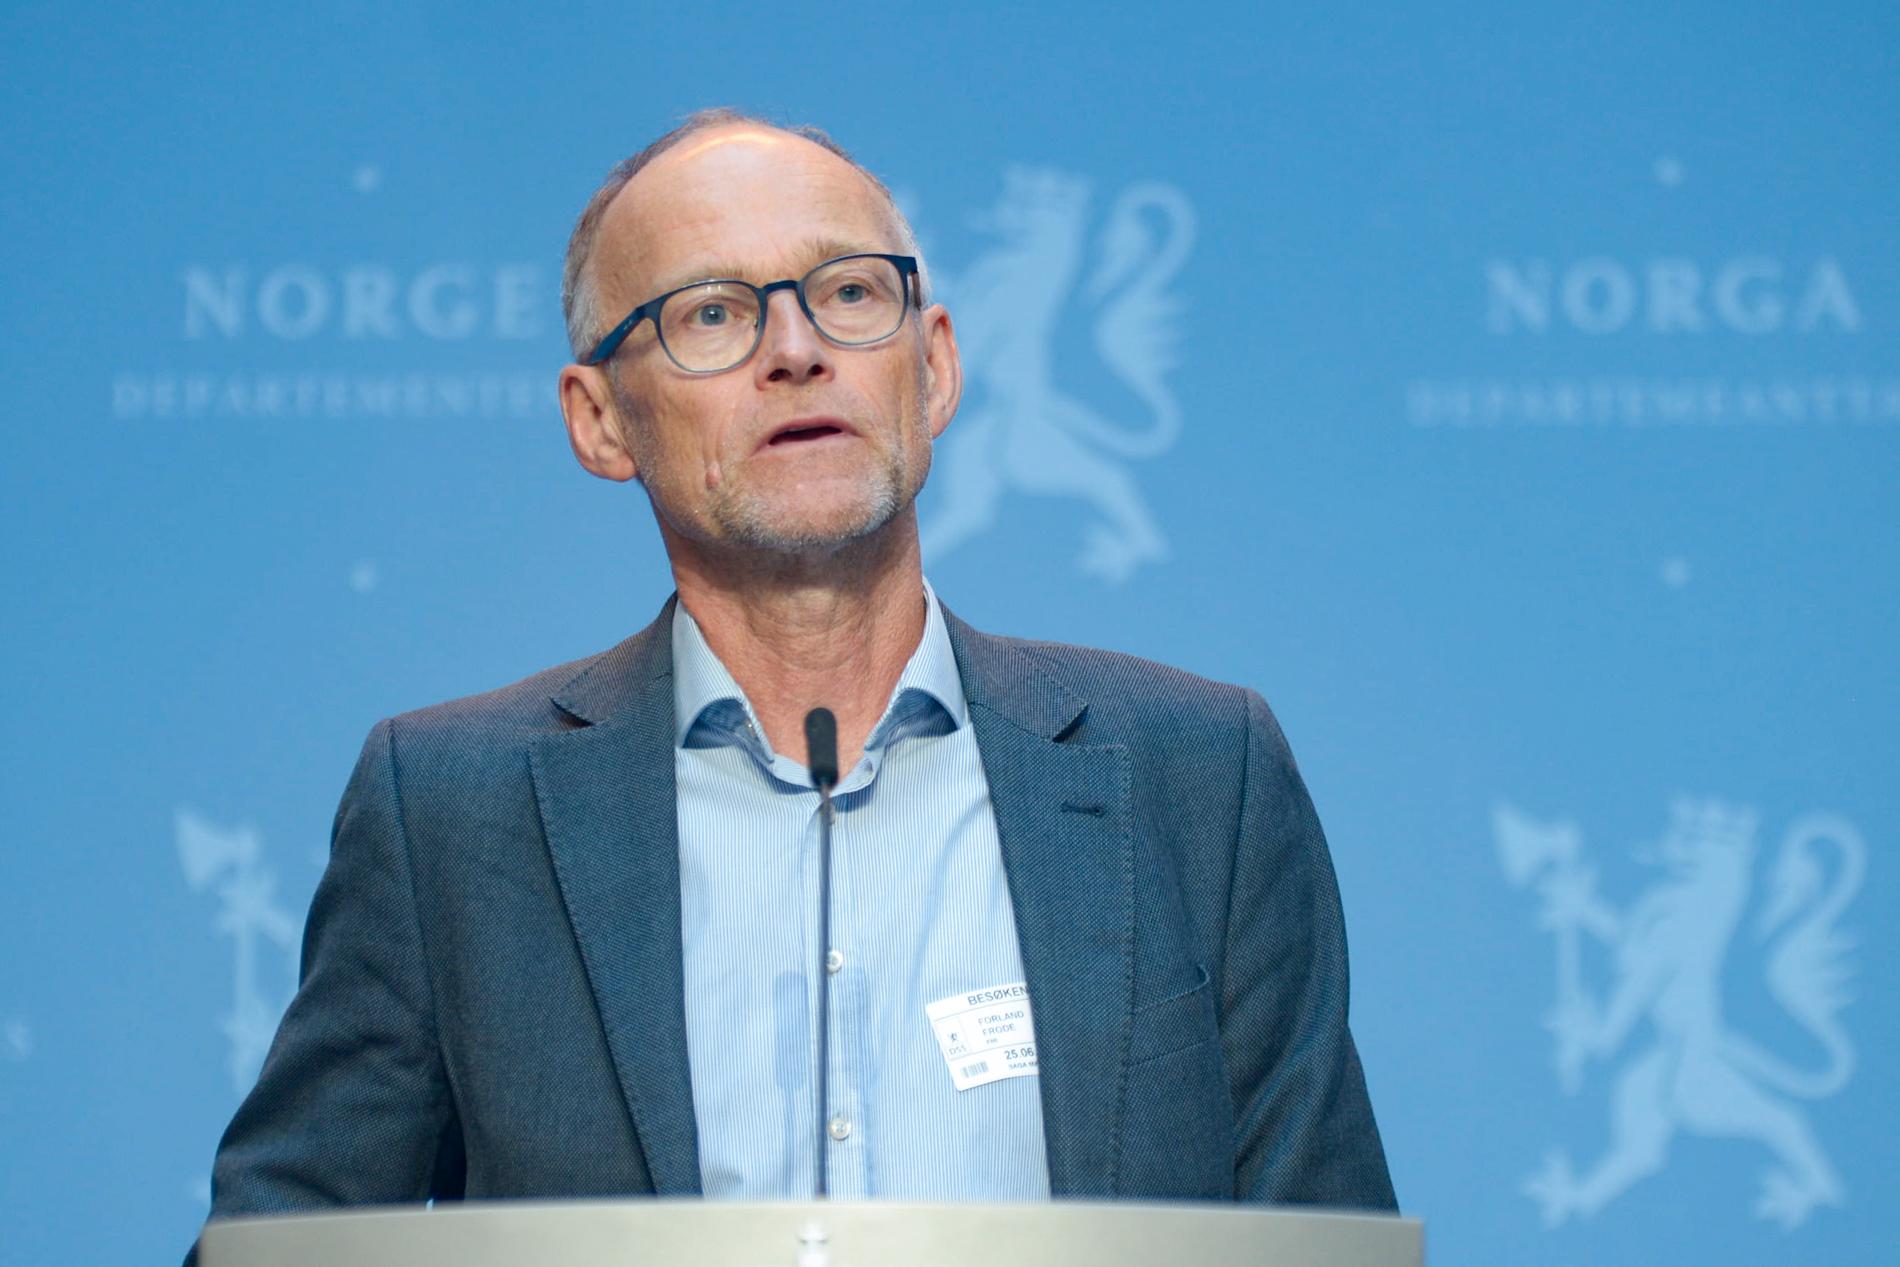 Norska FHI:s smittskyddsdirektör Frode Forland under onsdagens presskonferens där den norska regeringen lämnade beskedet om att ytterligare sex regioner i Sverige nu rödlistas.